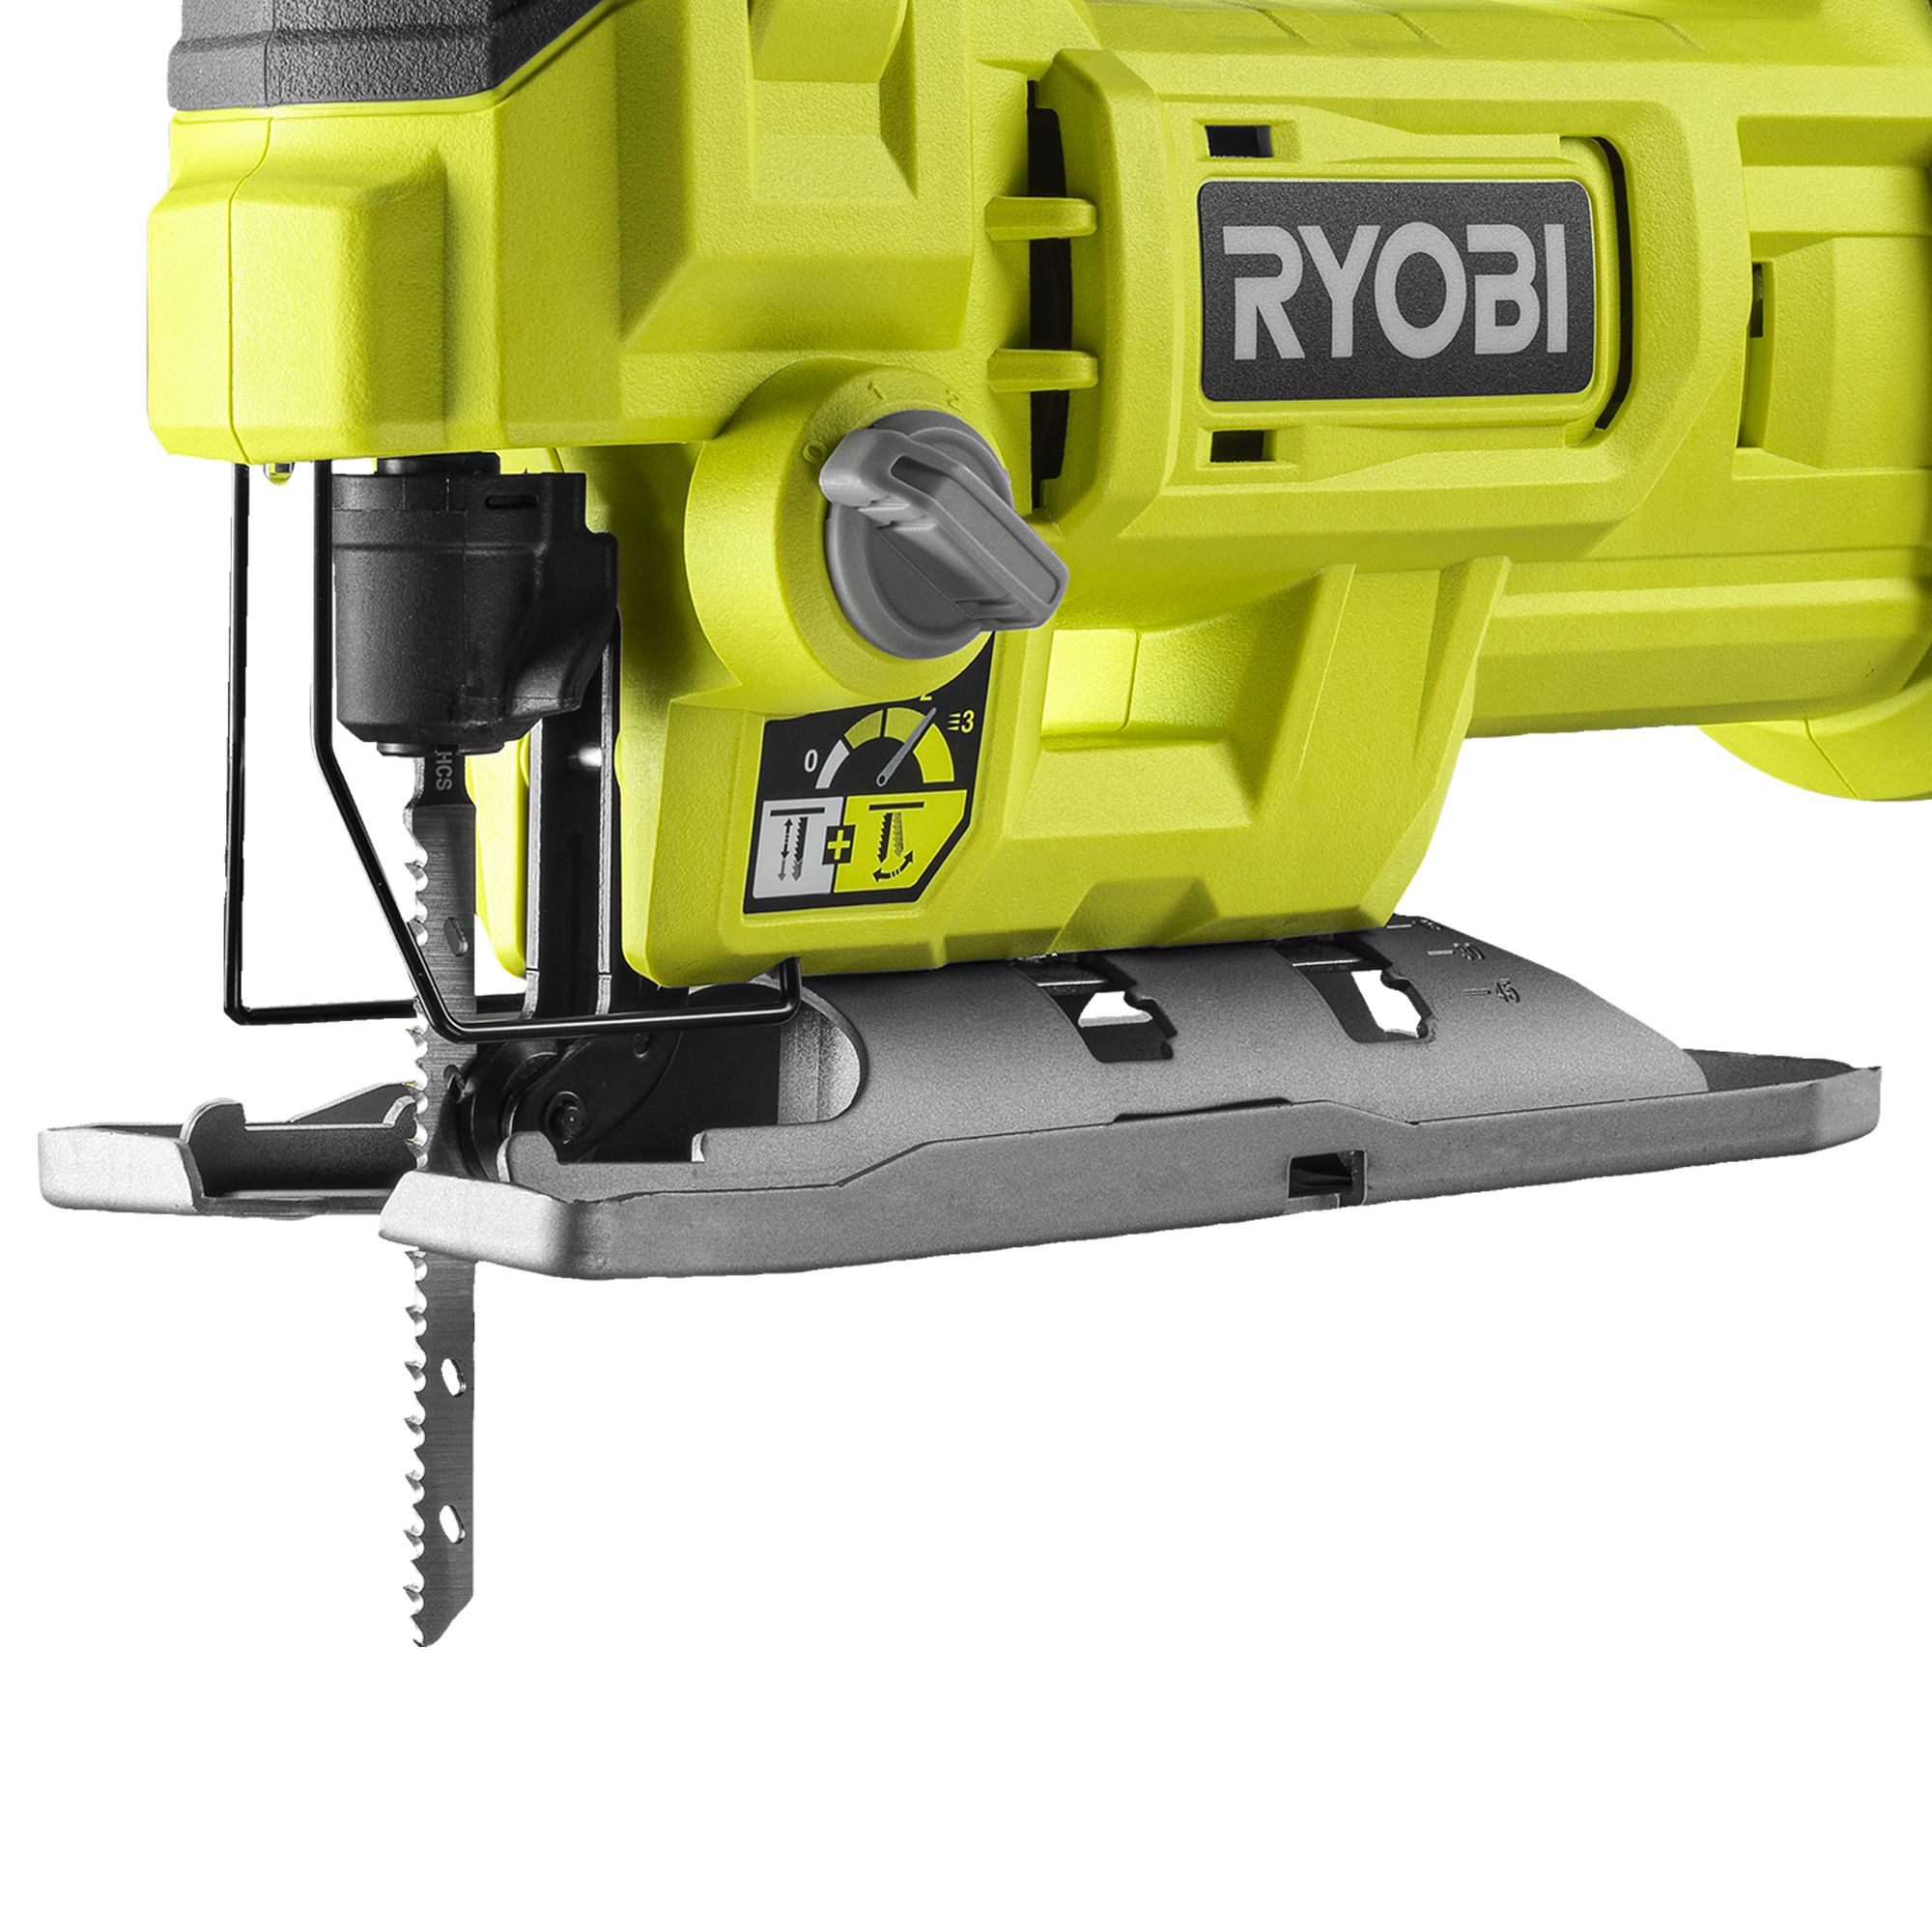 Ryobi ONE+ 18V One+ Brushed Cordless Jigsaw (Bare Tool) - RJS18-0